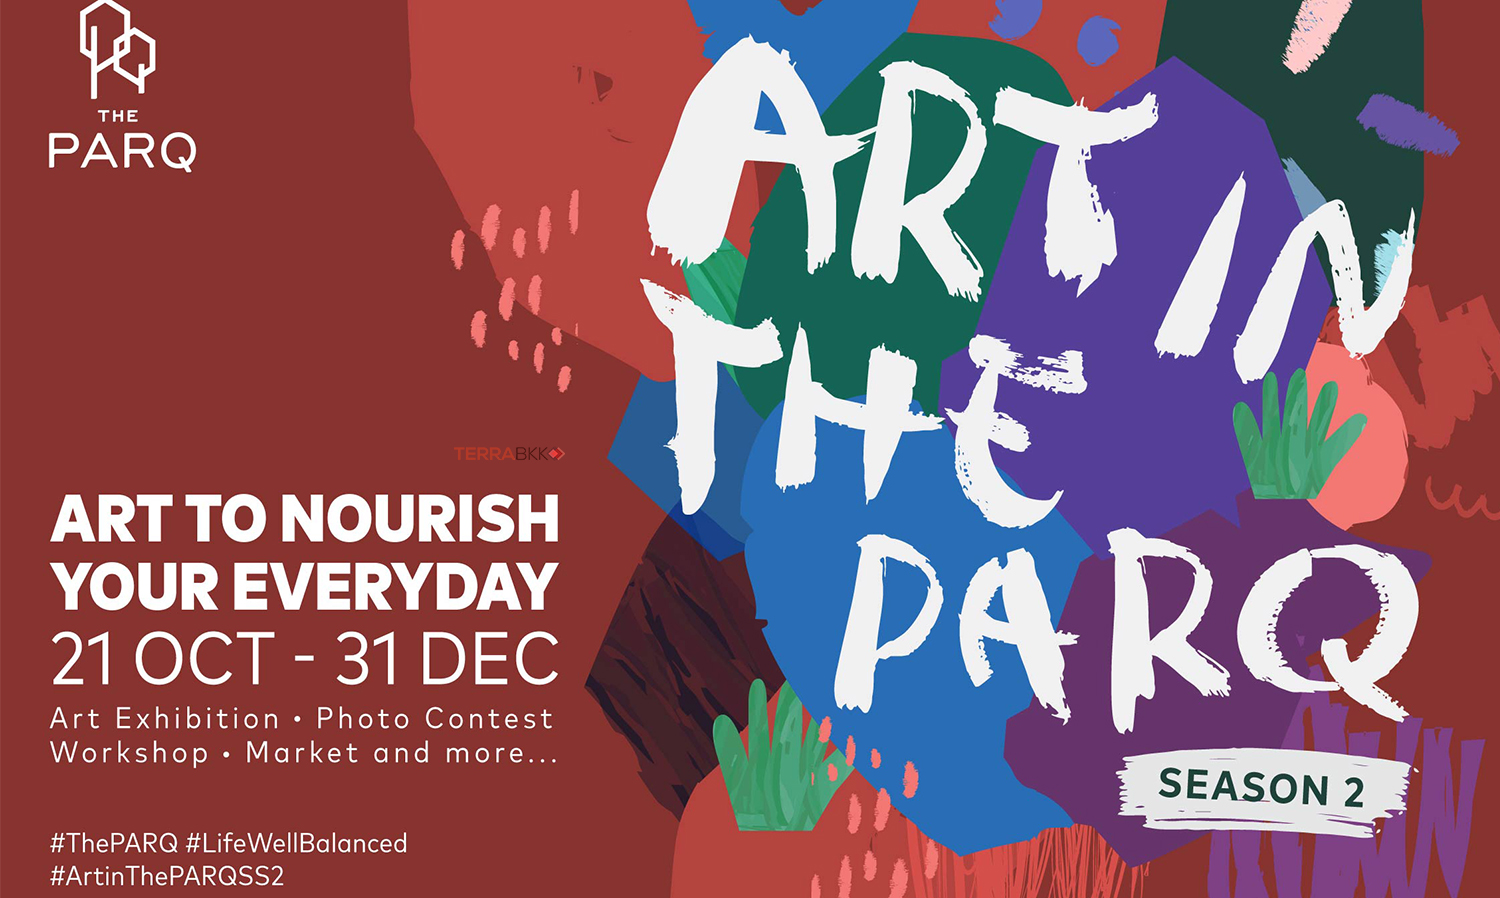 เอาใจสายอาร์ตกับ “Art in The PARQ - Season 2”  เทศกาลศิลปะร่วมสมัยใจกลางเมือง  